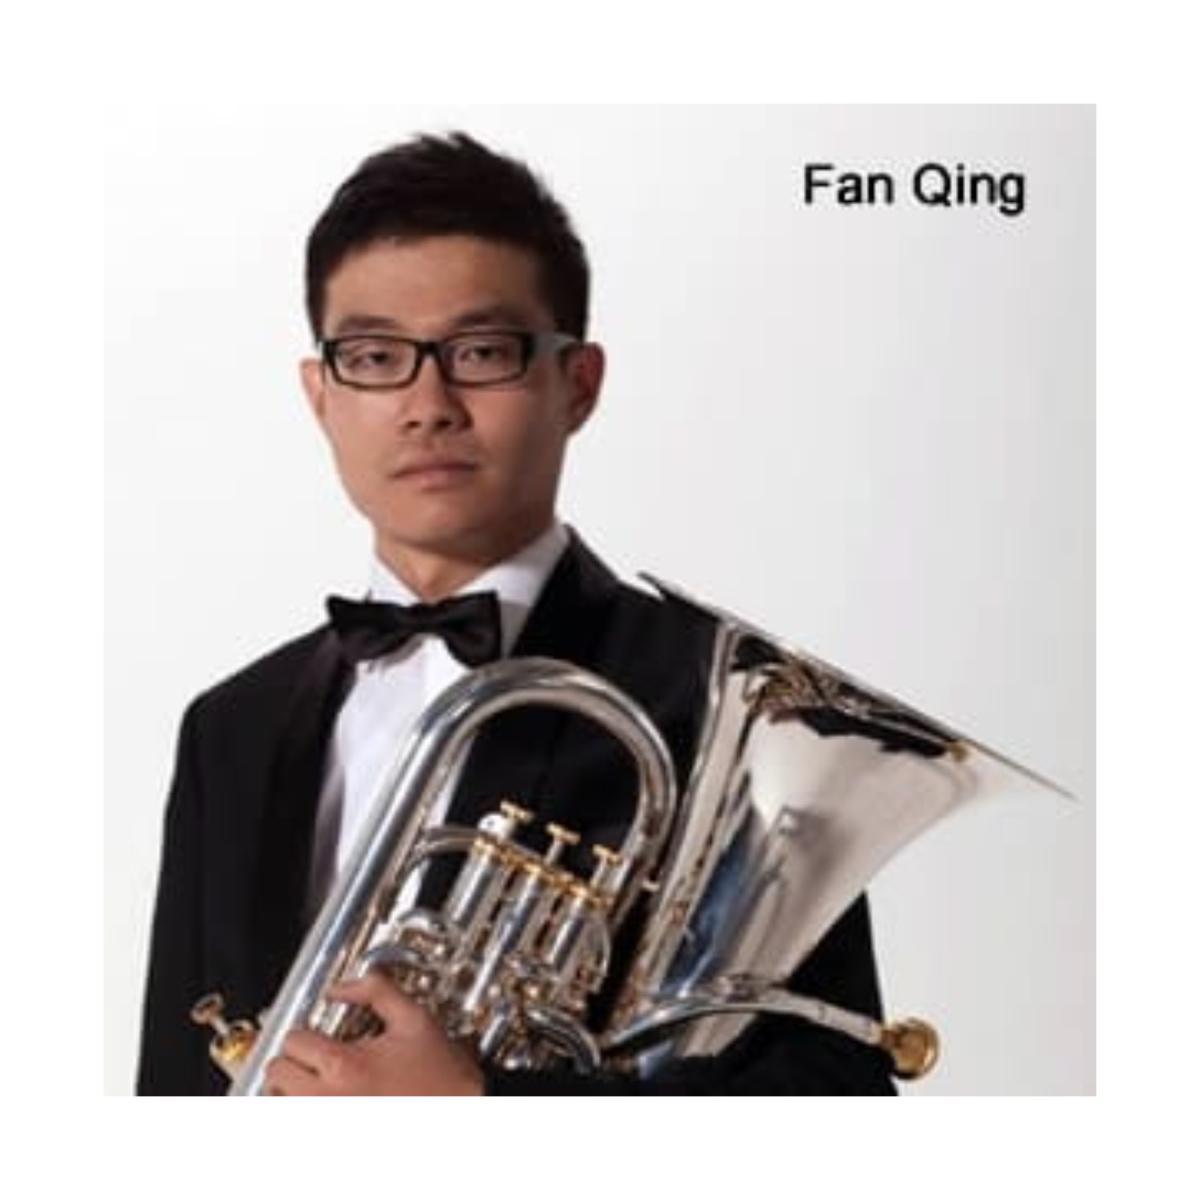 Fan Qing